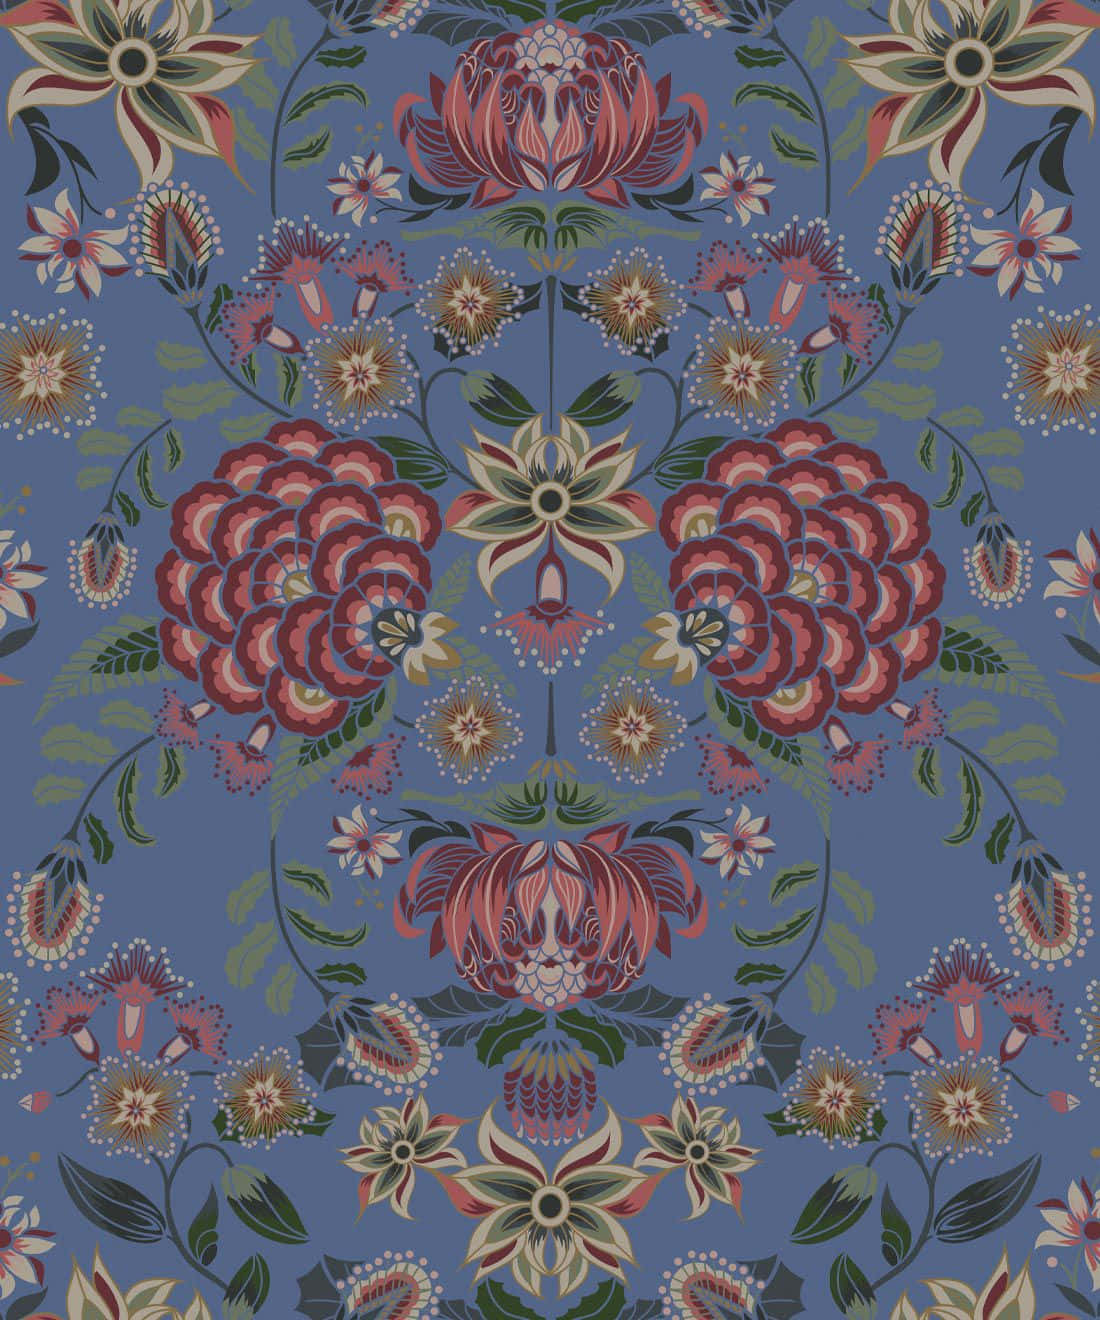 Symmetrical Floral Designer Wallpaper